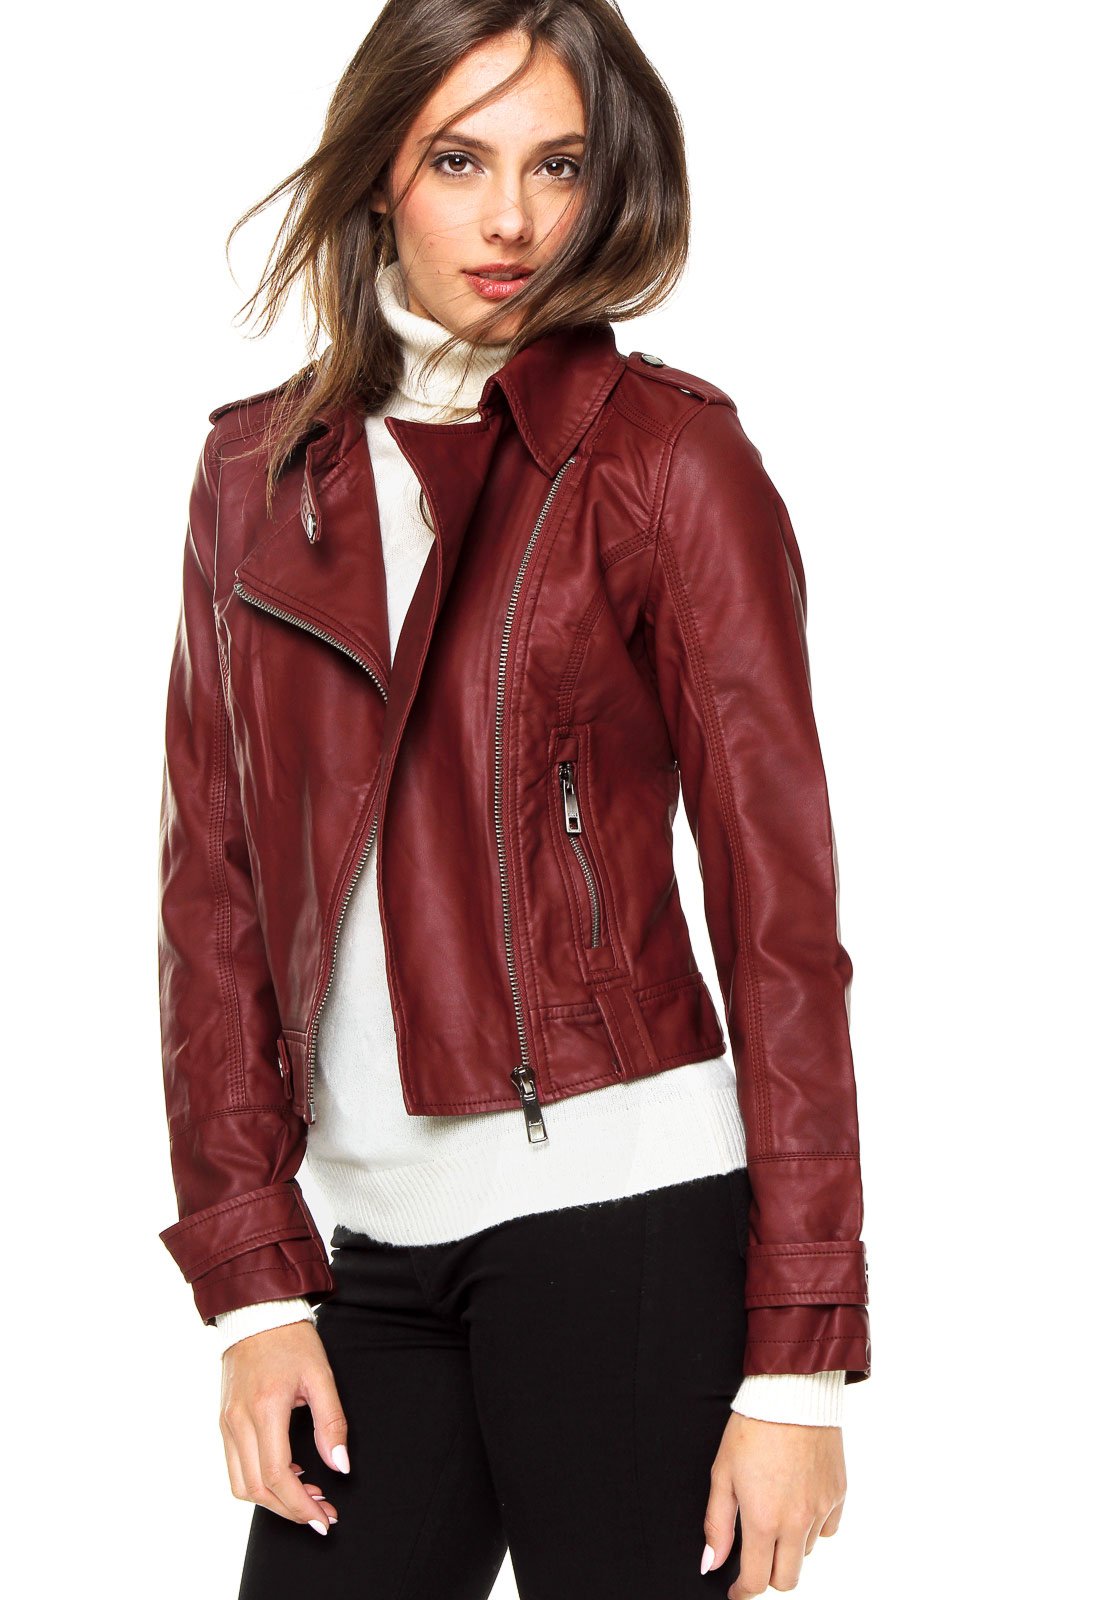 jaqueta ellus leather denim feminina